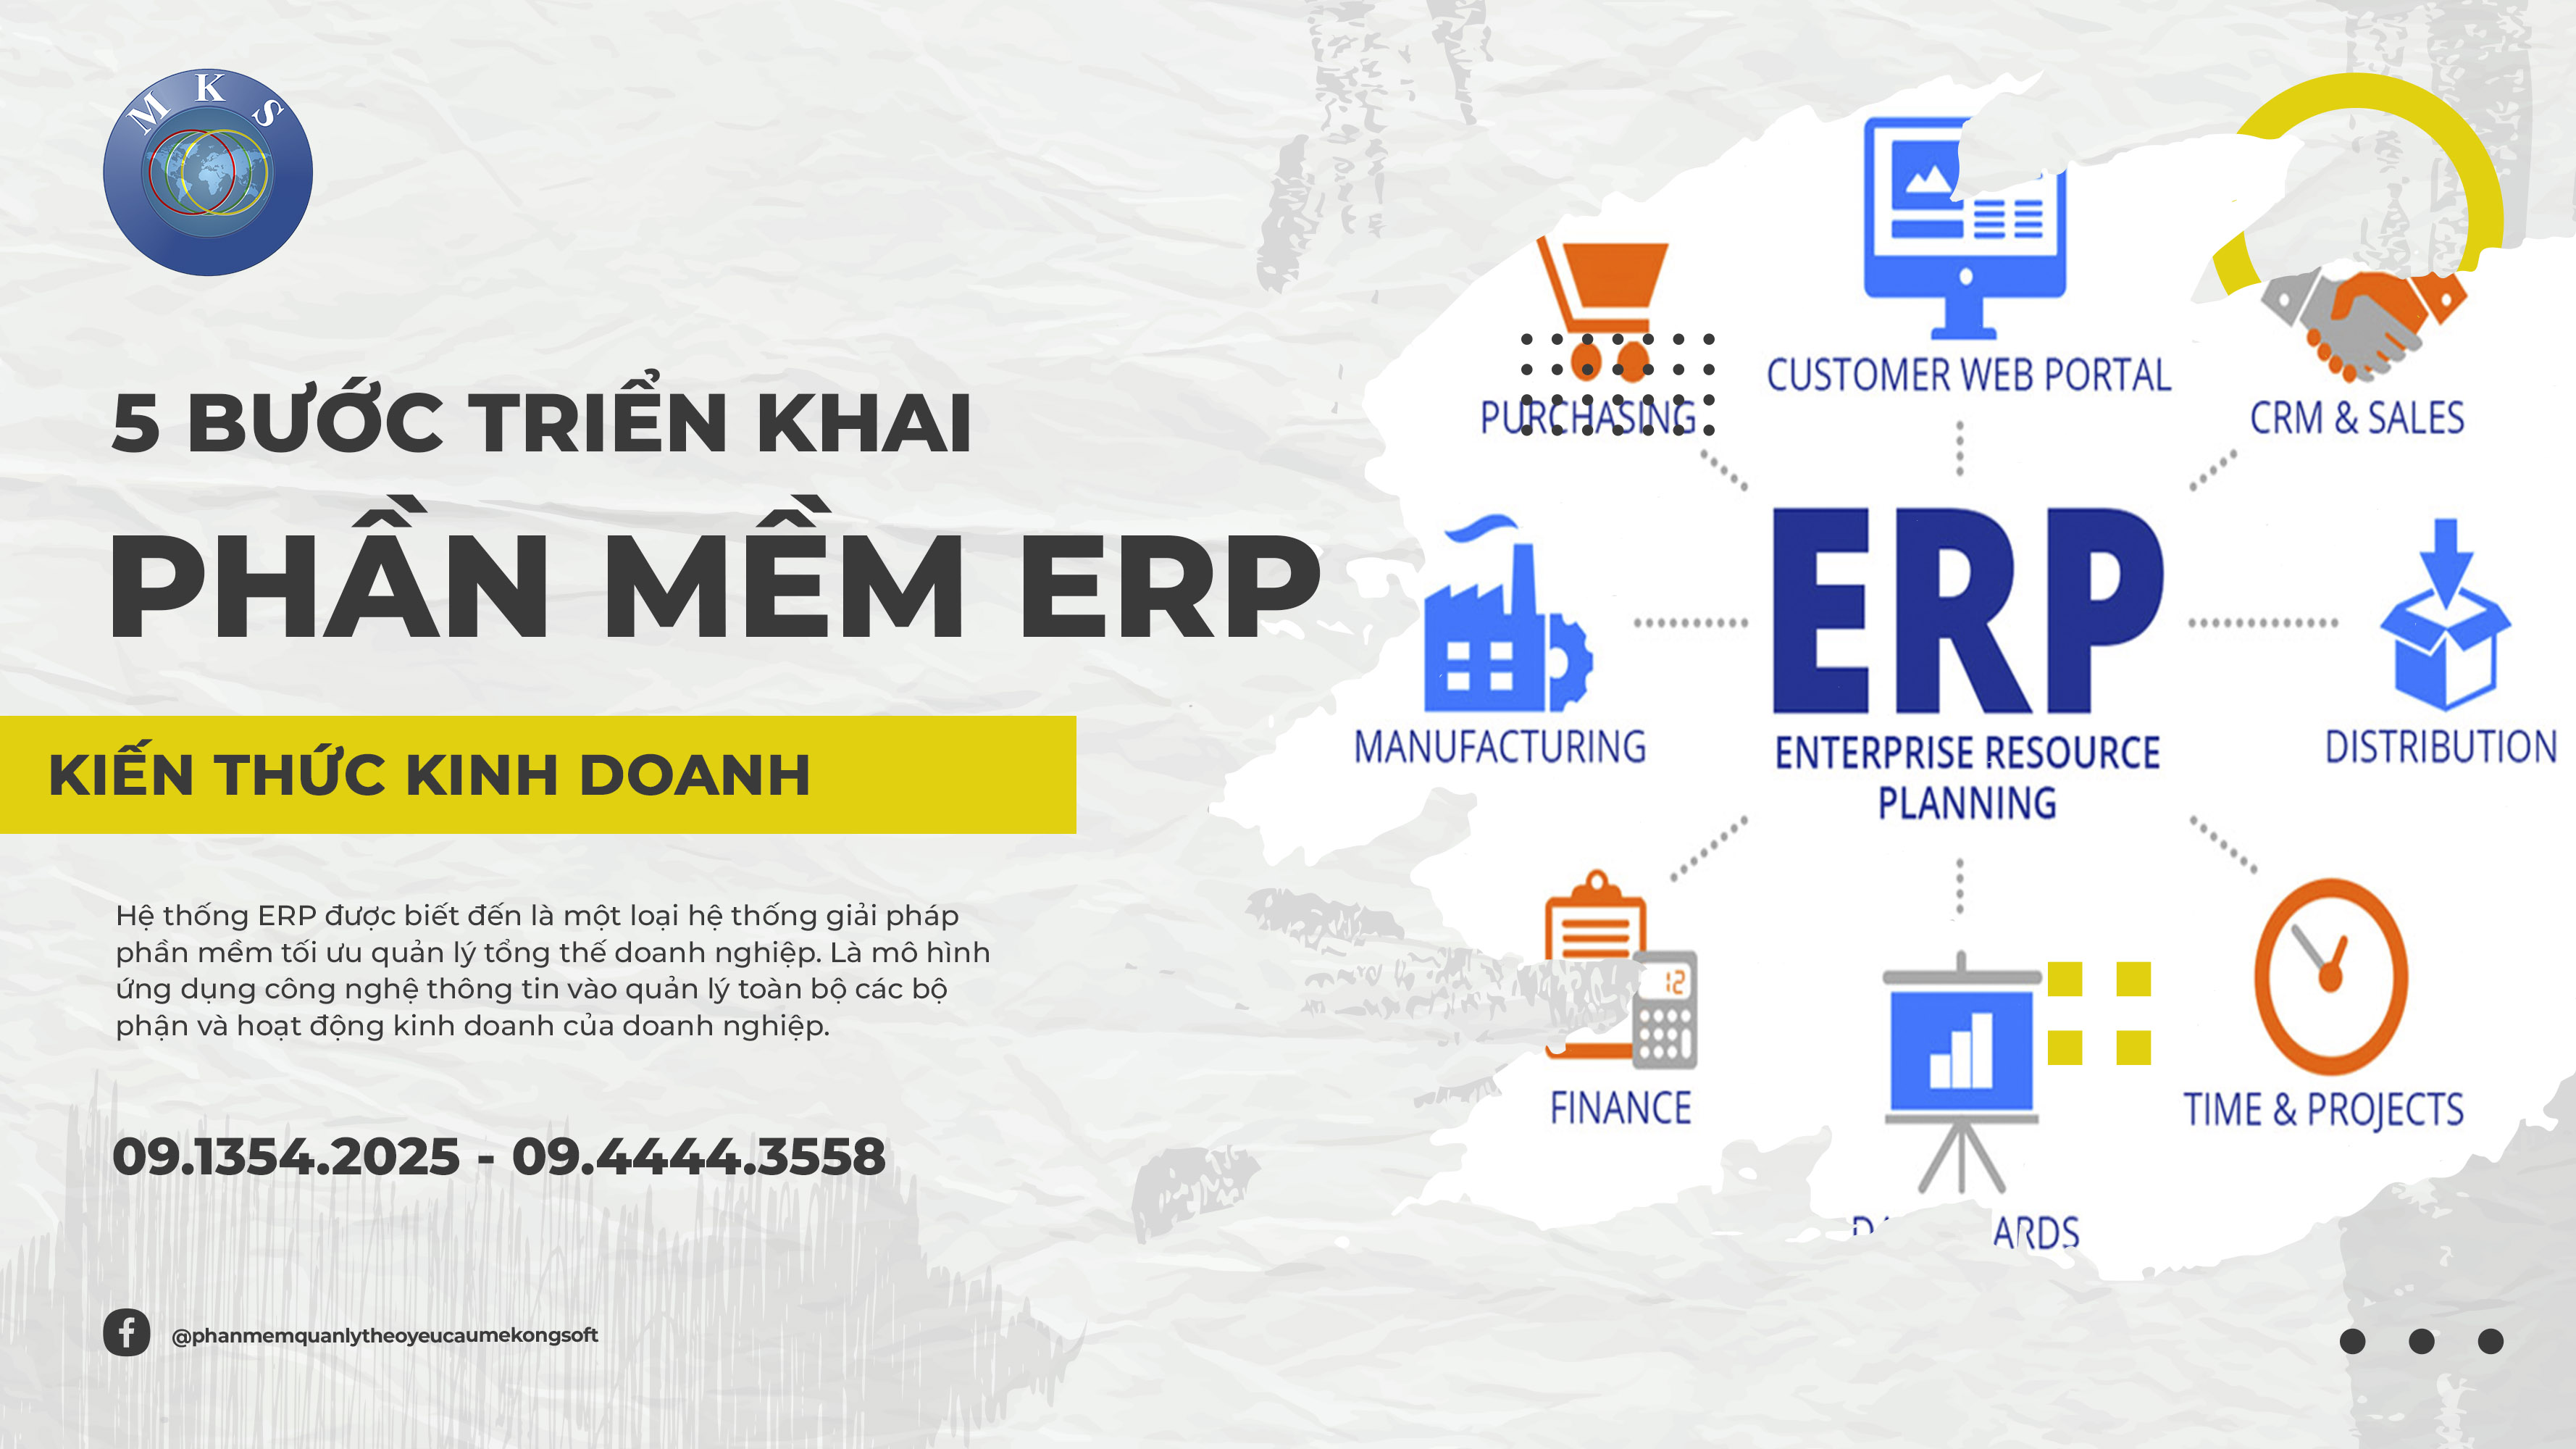 Đánh giá lợi ích của ERP đối với doanh nghiệp vừa và nhỏ  Công ty EMSG